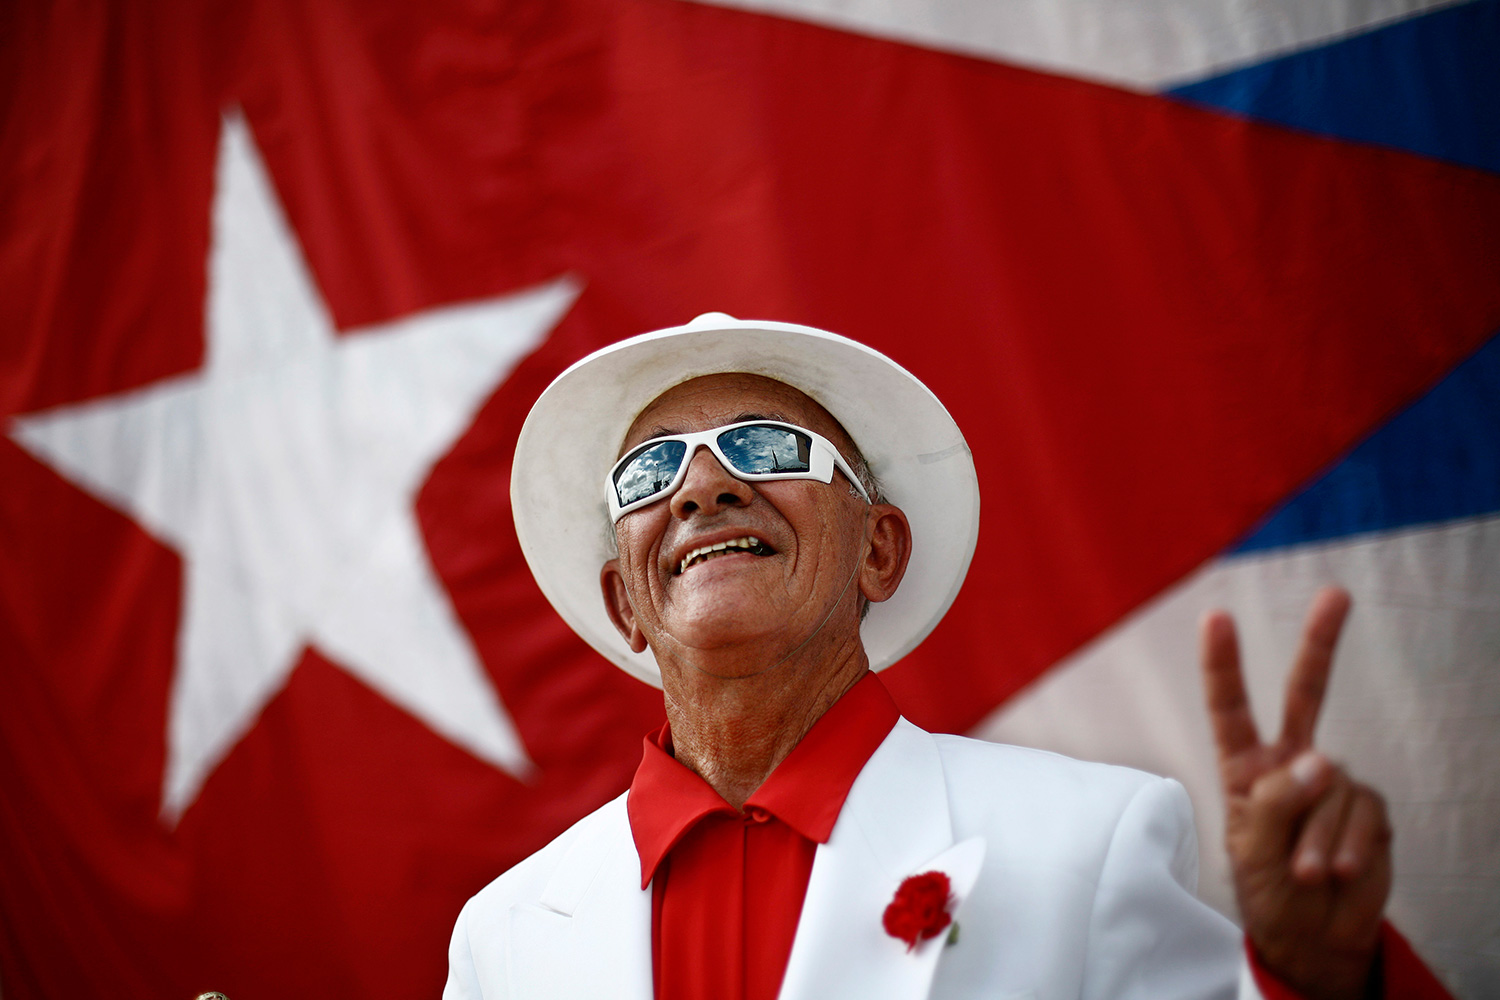 Nueva tendencia en Cuba: fotos con trajes y blusas digitales